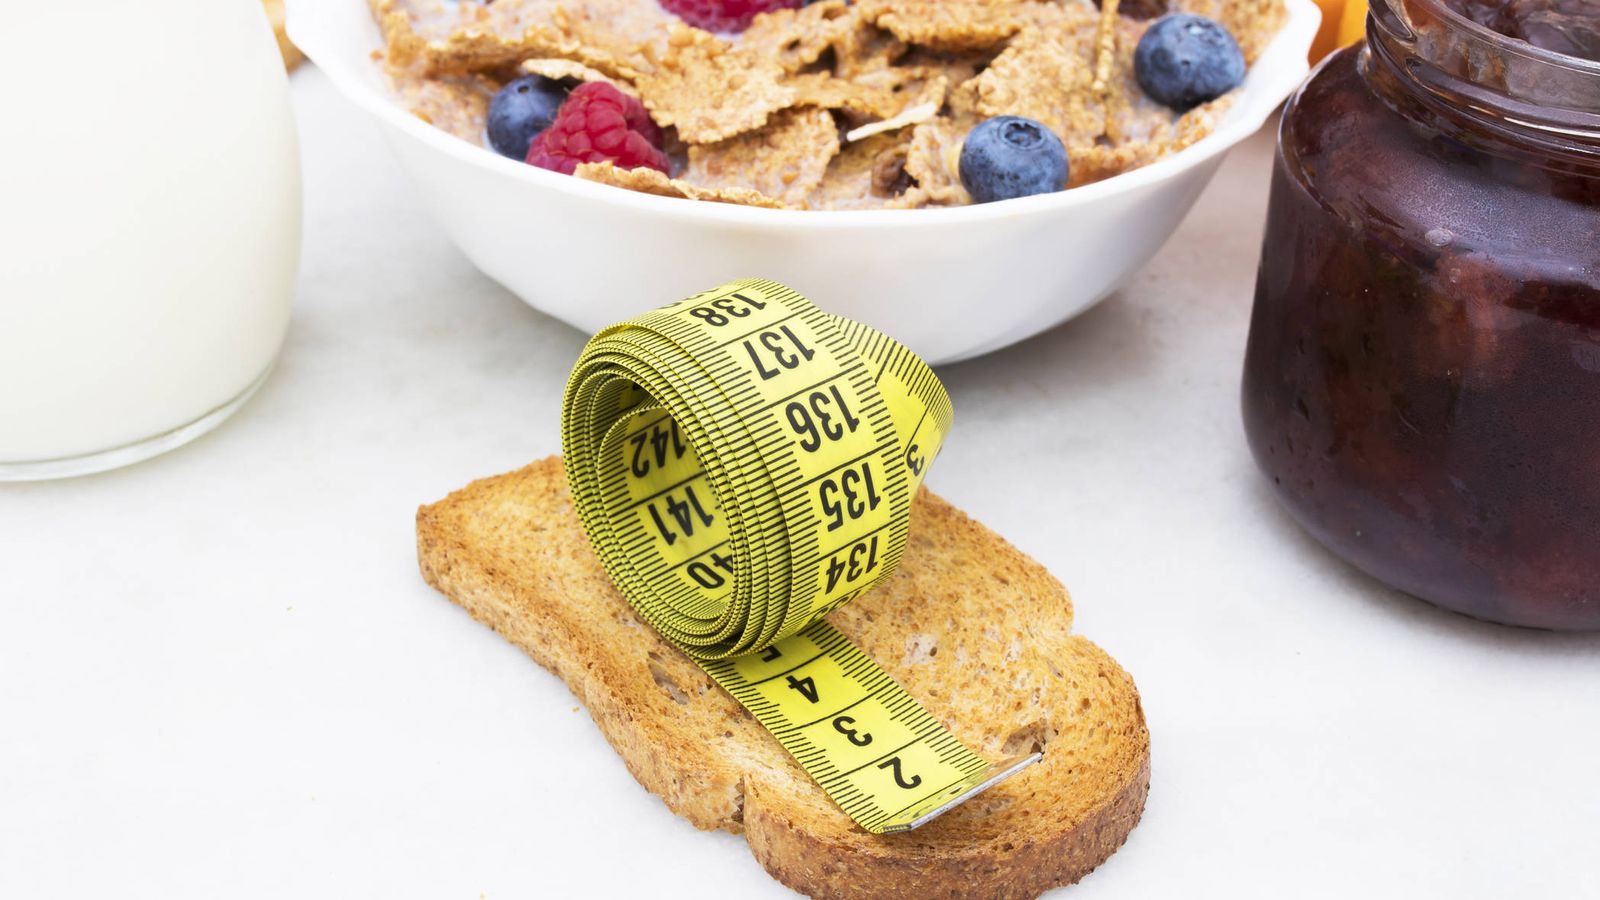 Foto: Desayuno y peso corporal, una relación controvertida. (iStock)